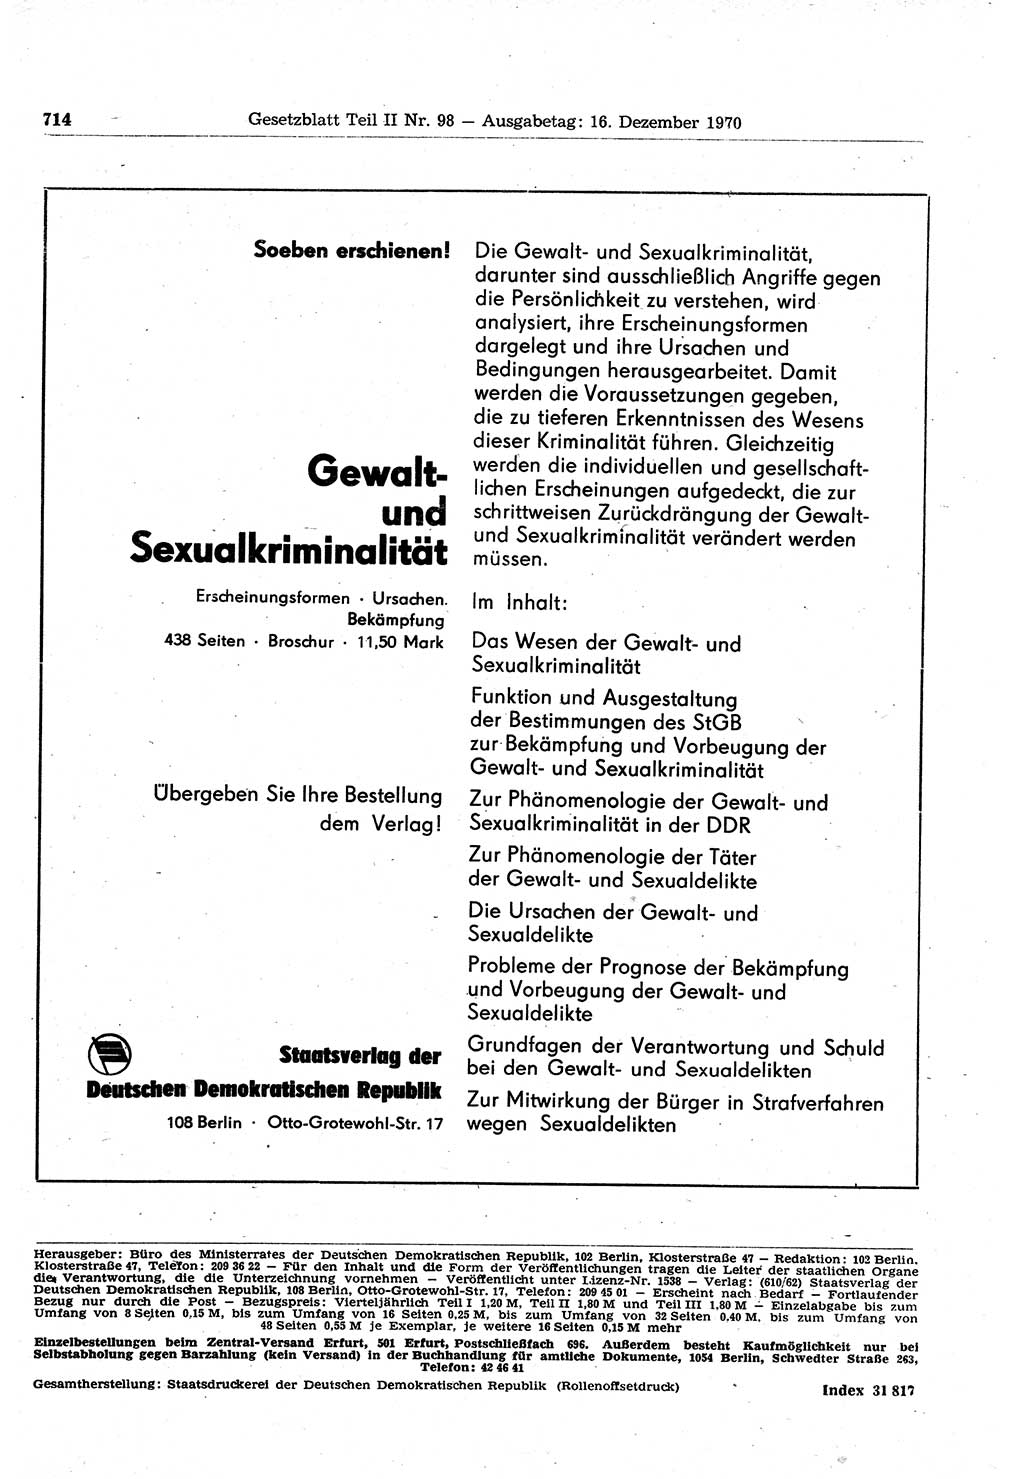 Gesetzblatt (GBl.) der Deutschen Demokratischen Republik (DDR) Teil ⅠⅠ 1970, Seite 714 (GBl. DDR ⅠⅠ 1970, S. 714)